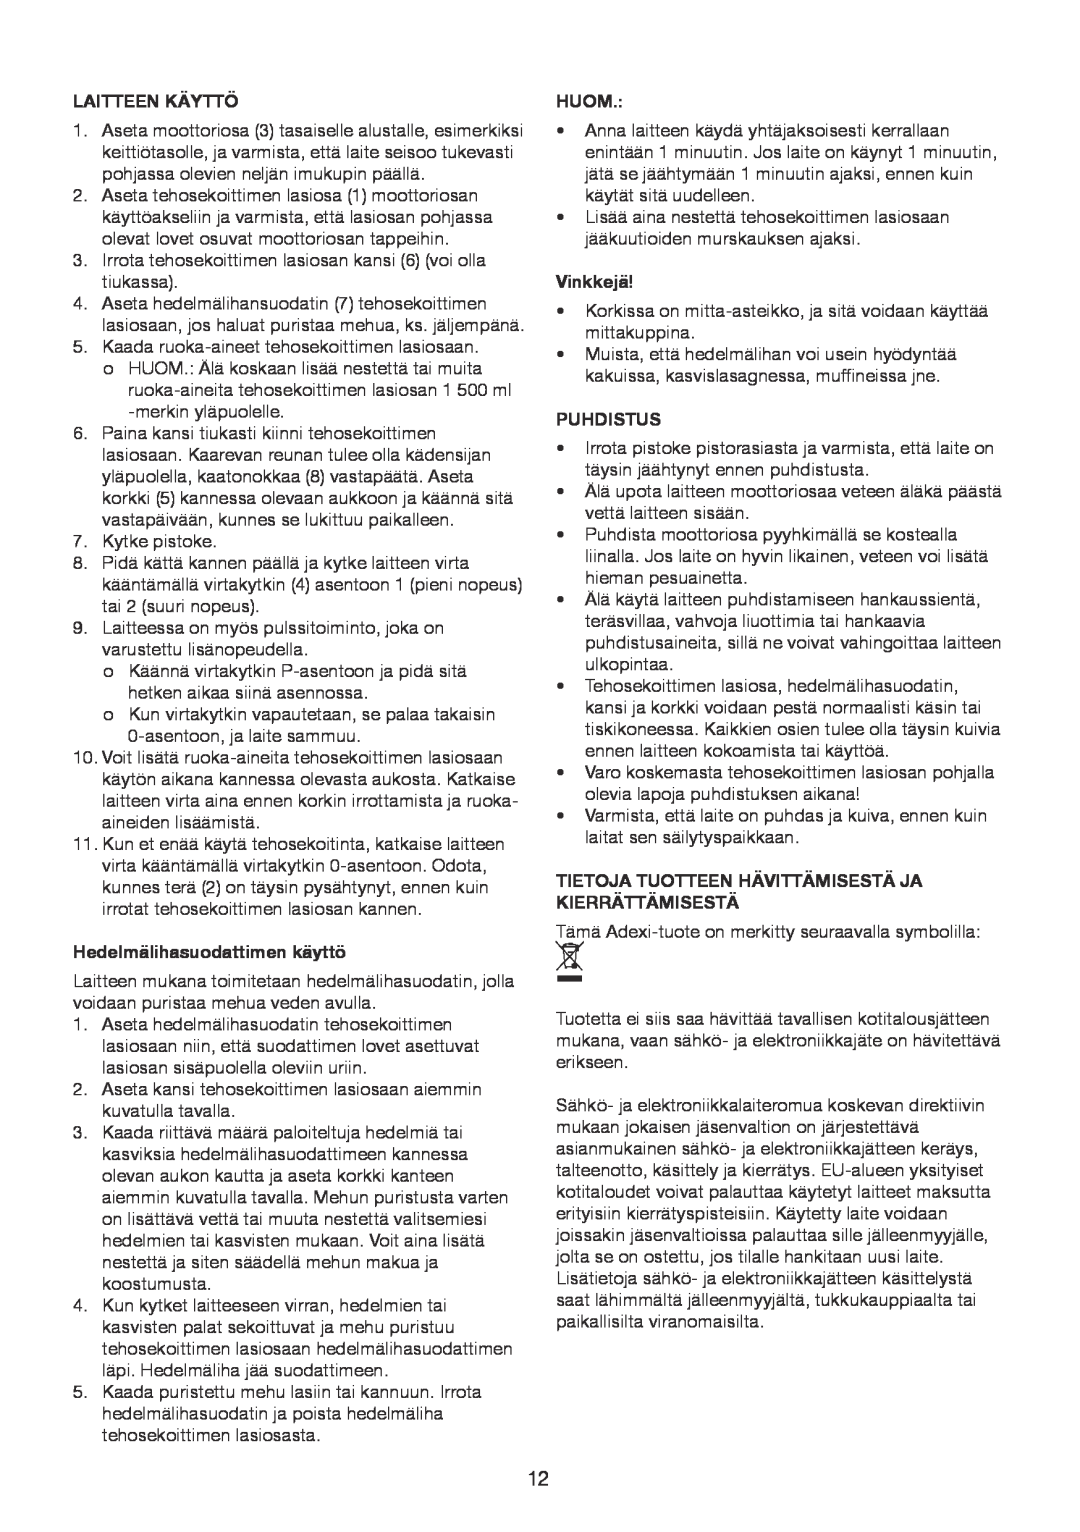 Melissa 246-035 manual Laitteen Käyttö, Hedelmälihasuodattimen käyttö, Huom, Vinkkejä, Puhdistus 